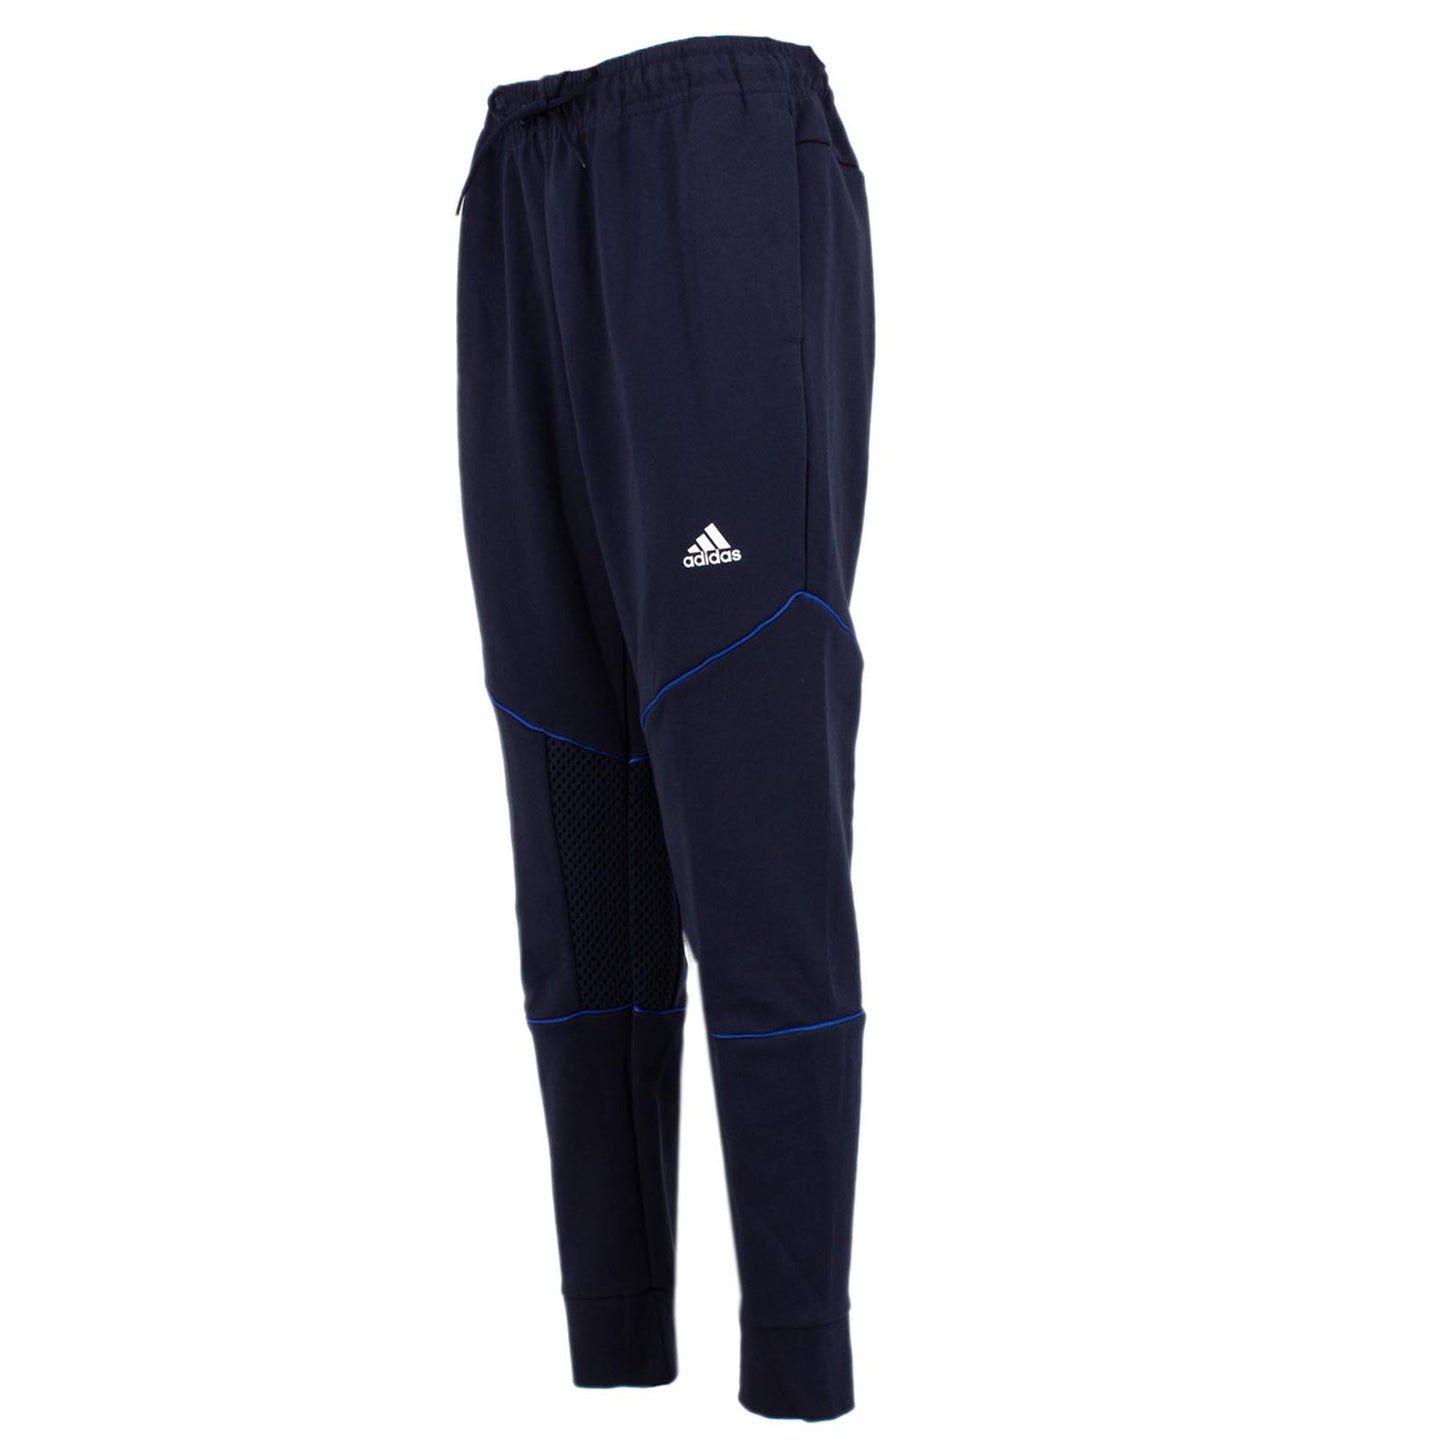 Adidas Must have Primeblue Pants Herren Hose Training Sporthose Blau FU0035